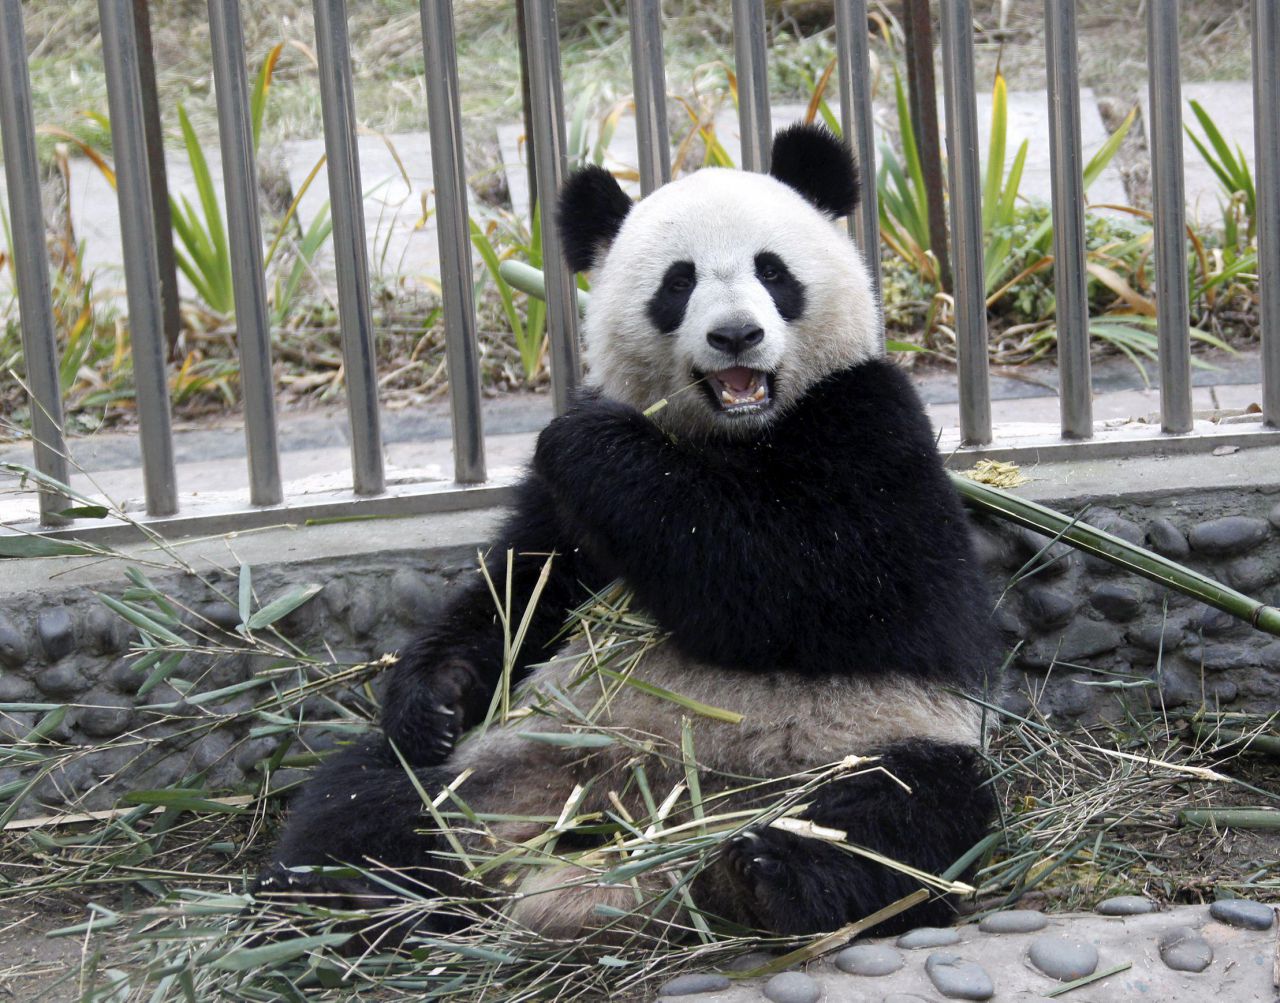 Zoo de Beauval : Huan Huan, la femelle panda, attend des... jumeaux !